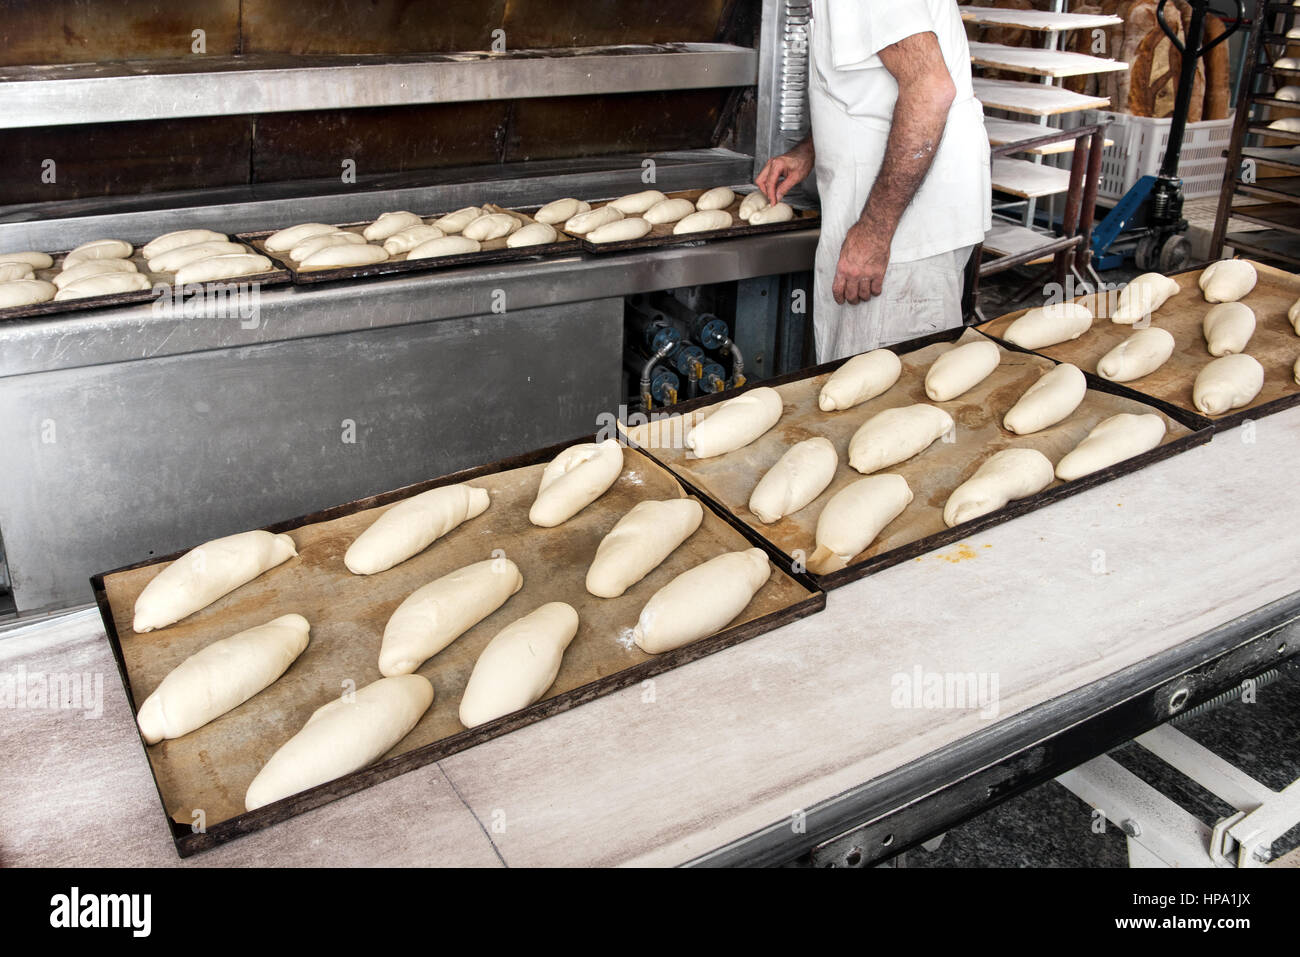 Homme Incognito Baker en chemise blanche faire du pain, quelques casseroles avec pâtons prêts pour la cuisson loafs depuis longtemps sur les tables d'une boulangerie Banque D'Images